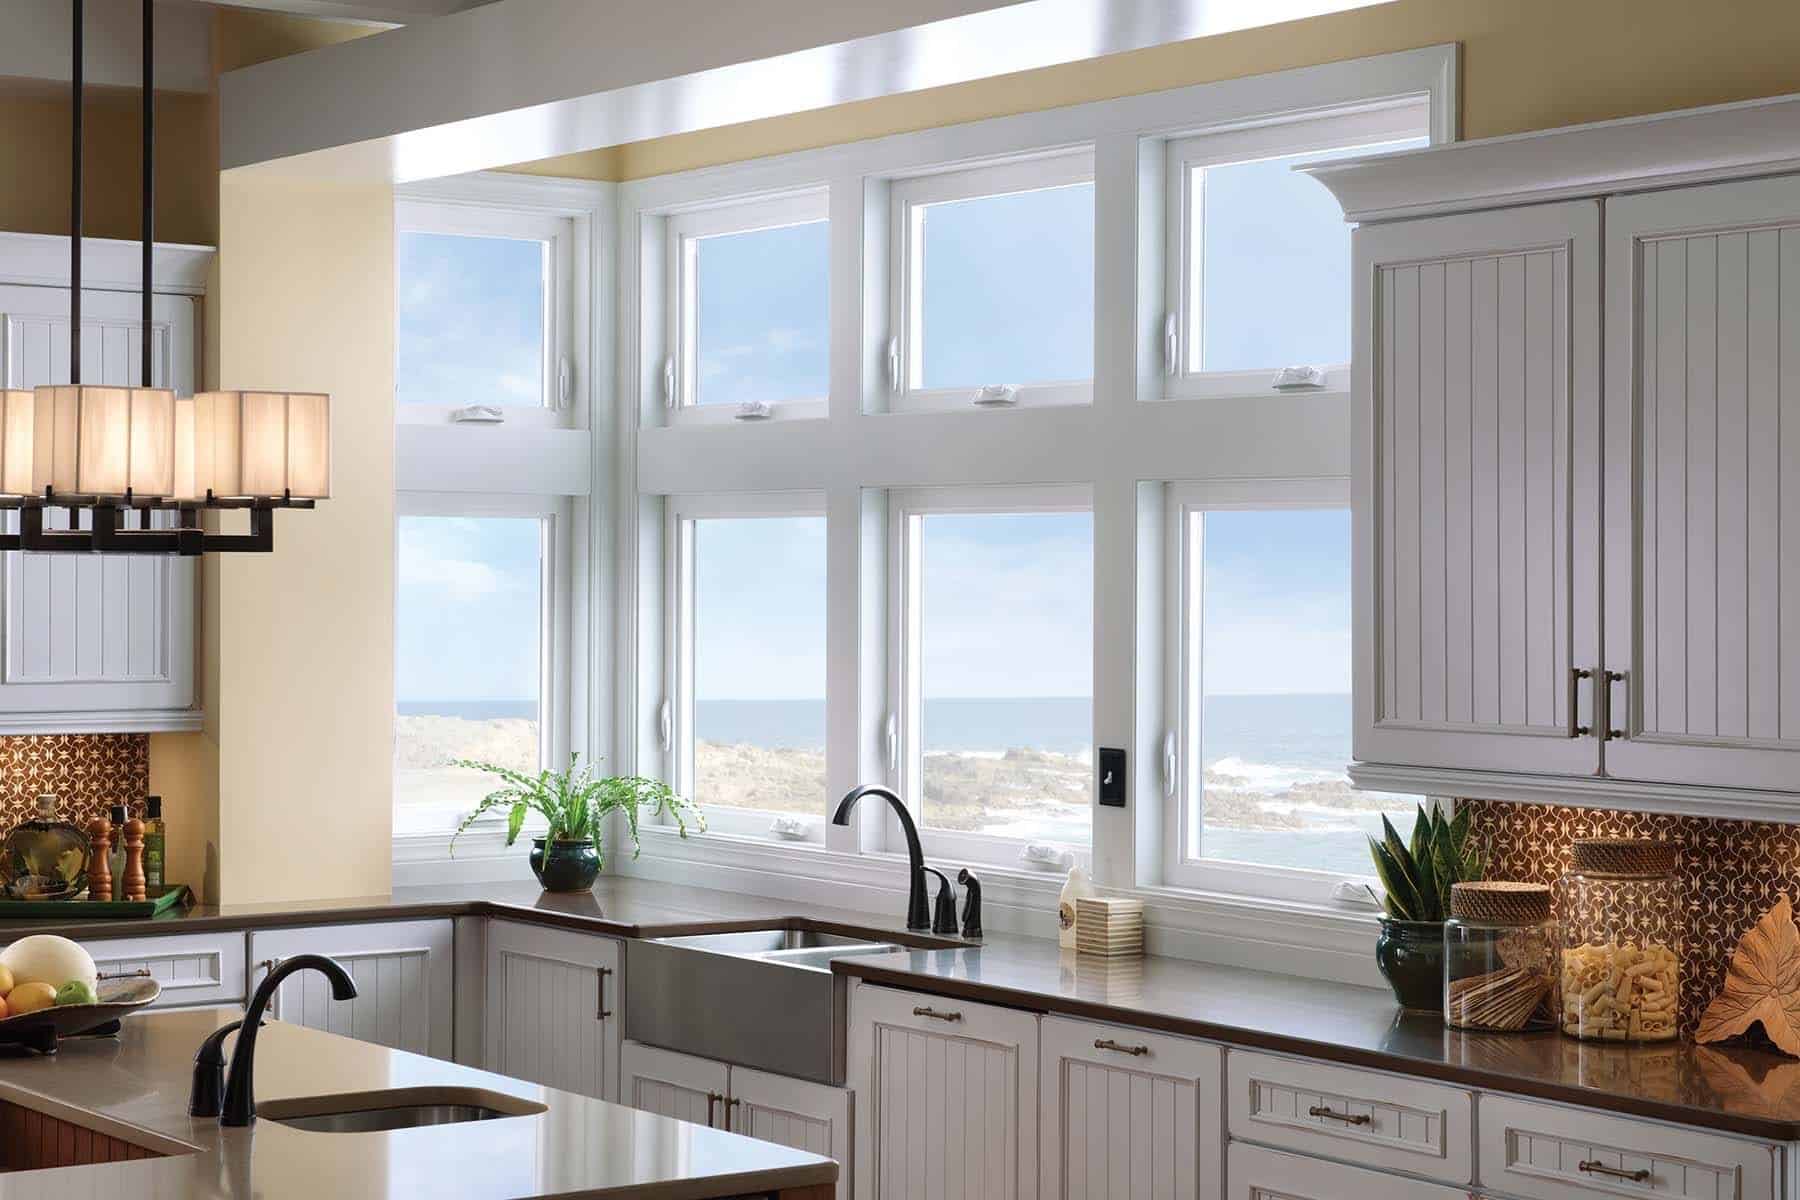 Окна на кухне купить. Кухня с окном. Кухня с большими окнами. Интерьер кухни с окном. Кухня с большим окном.